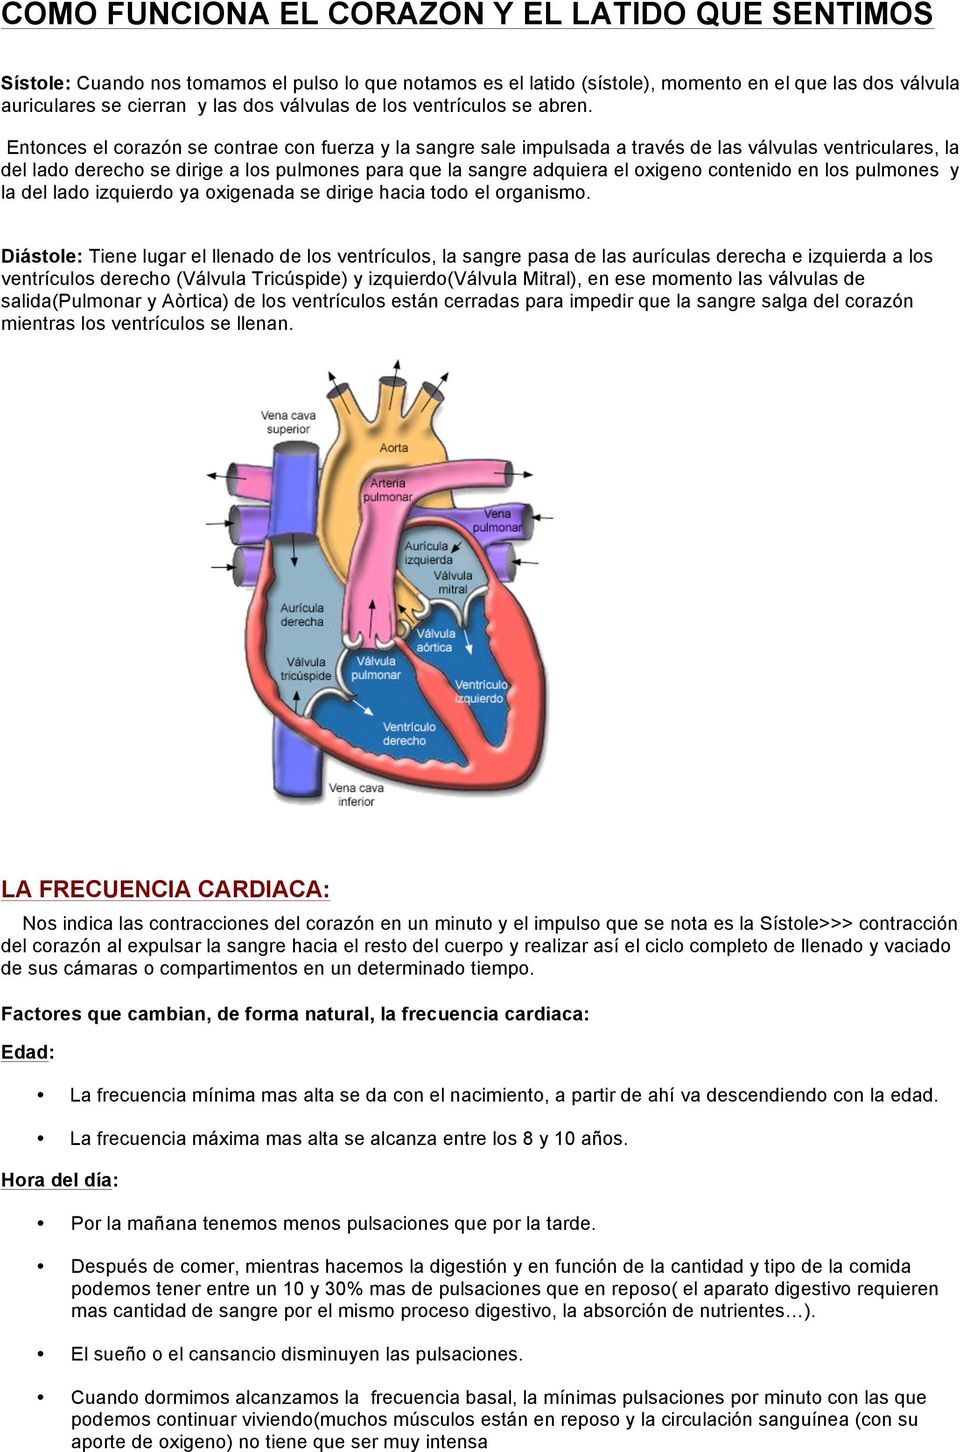 Entonces el corazón se contrae con fuerza y la sangre sale impulsada a través de las válvulas ventriculares, la del lado derecho se dirige a los pulmones para que la sangre adquiera el oxigeno